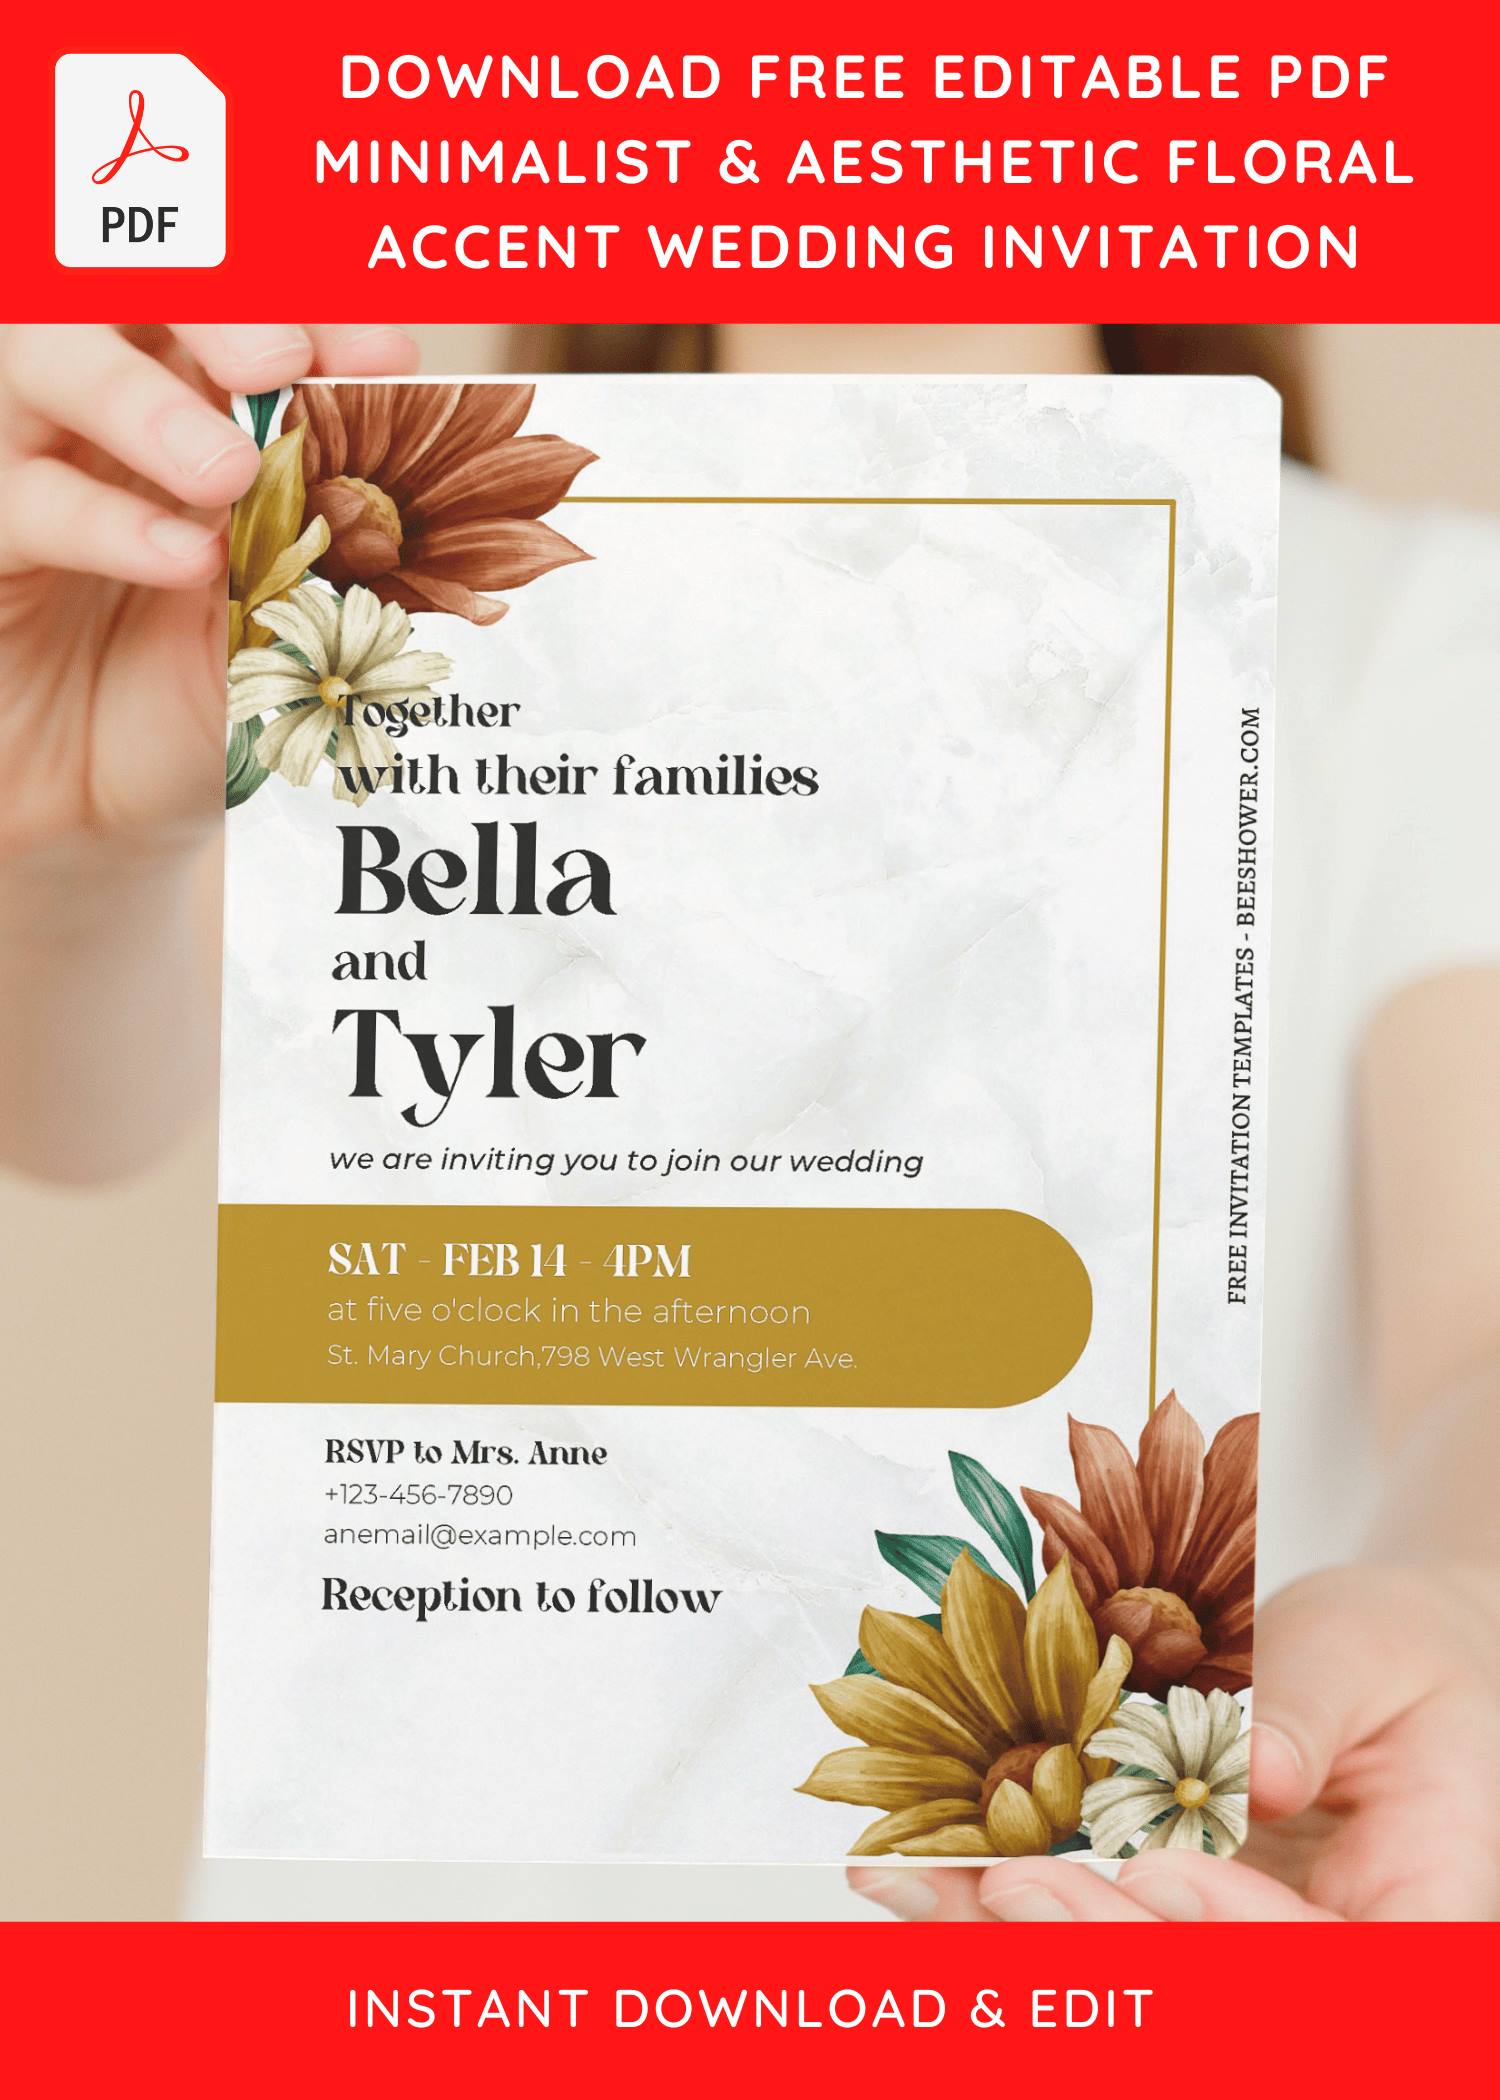 (Free Editable PDF) Minimalist & Aesthetic Floral Wedding Invitation Templates